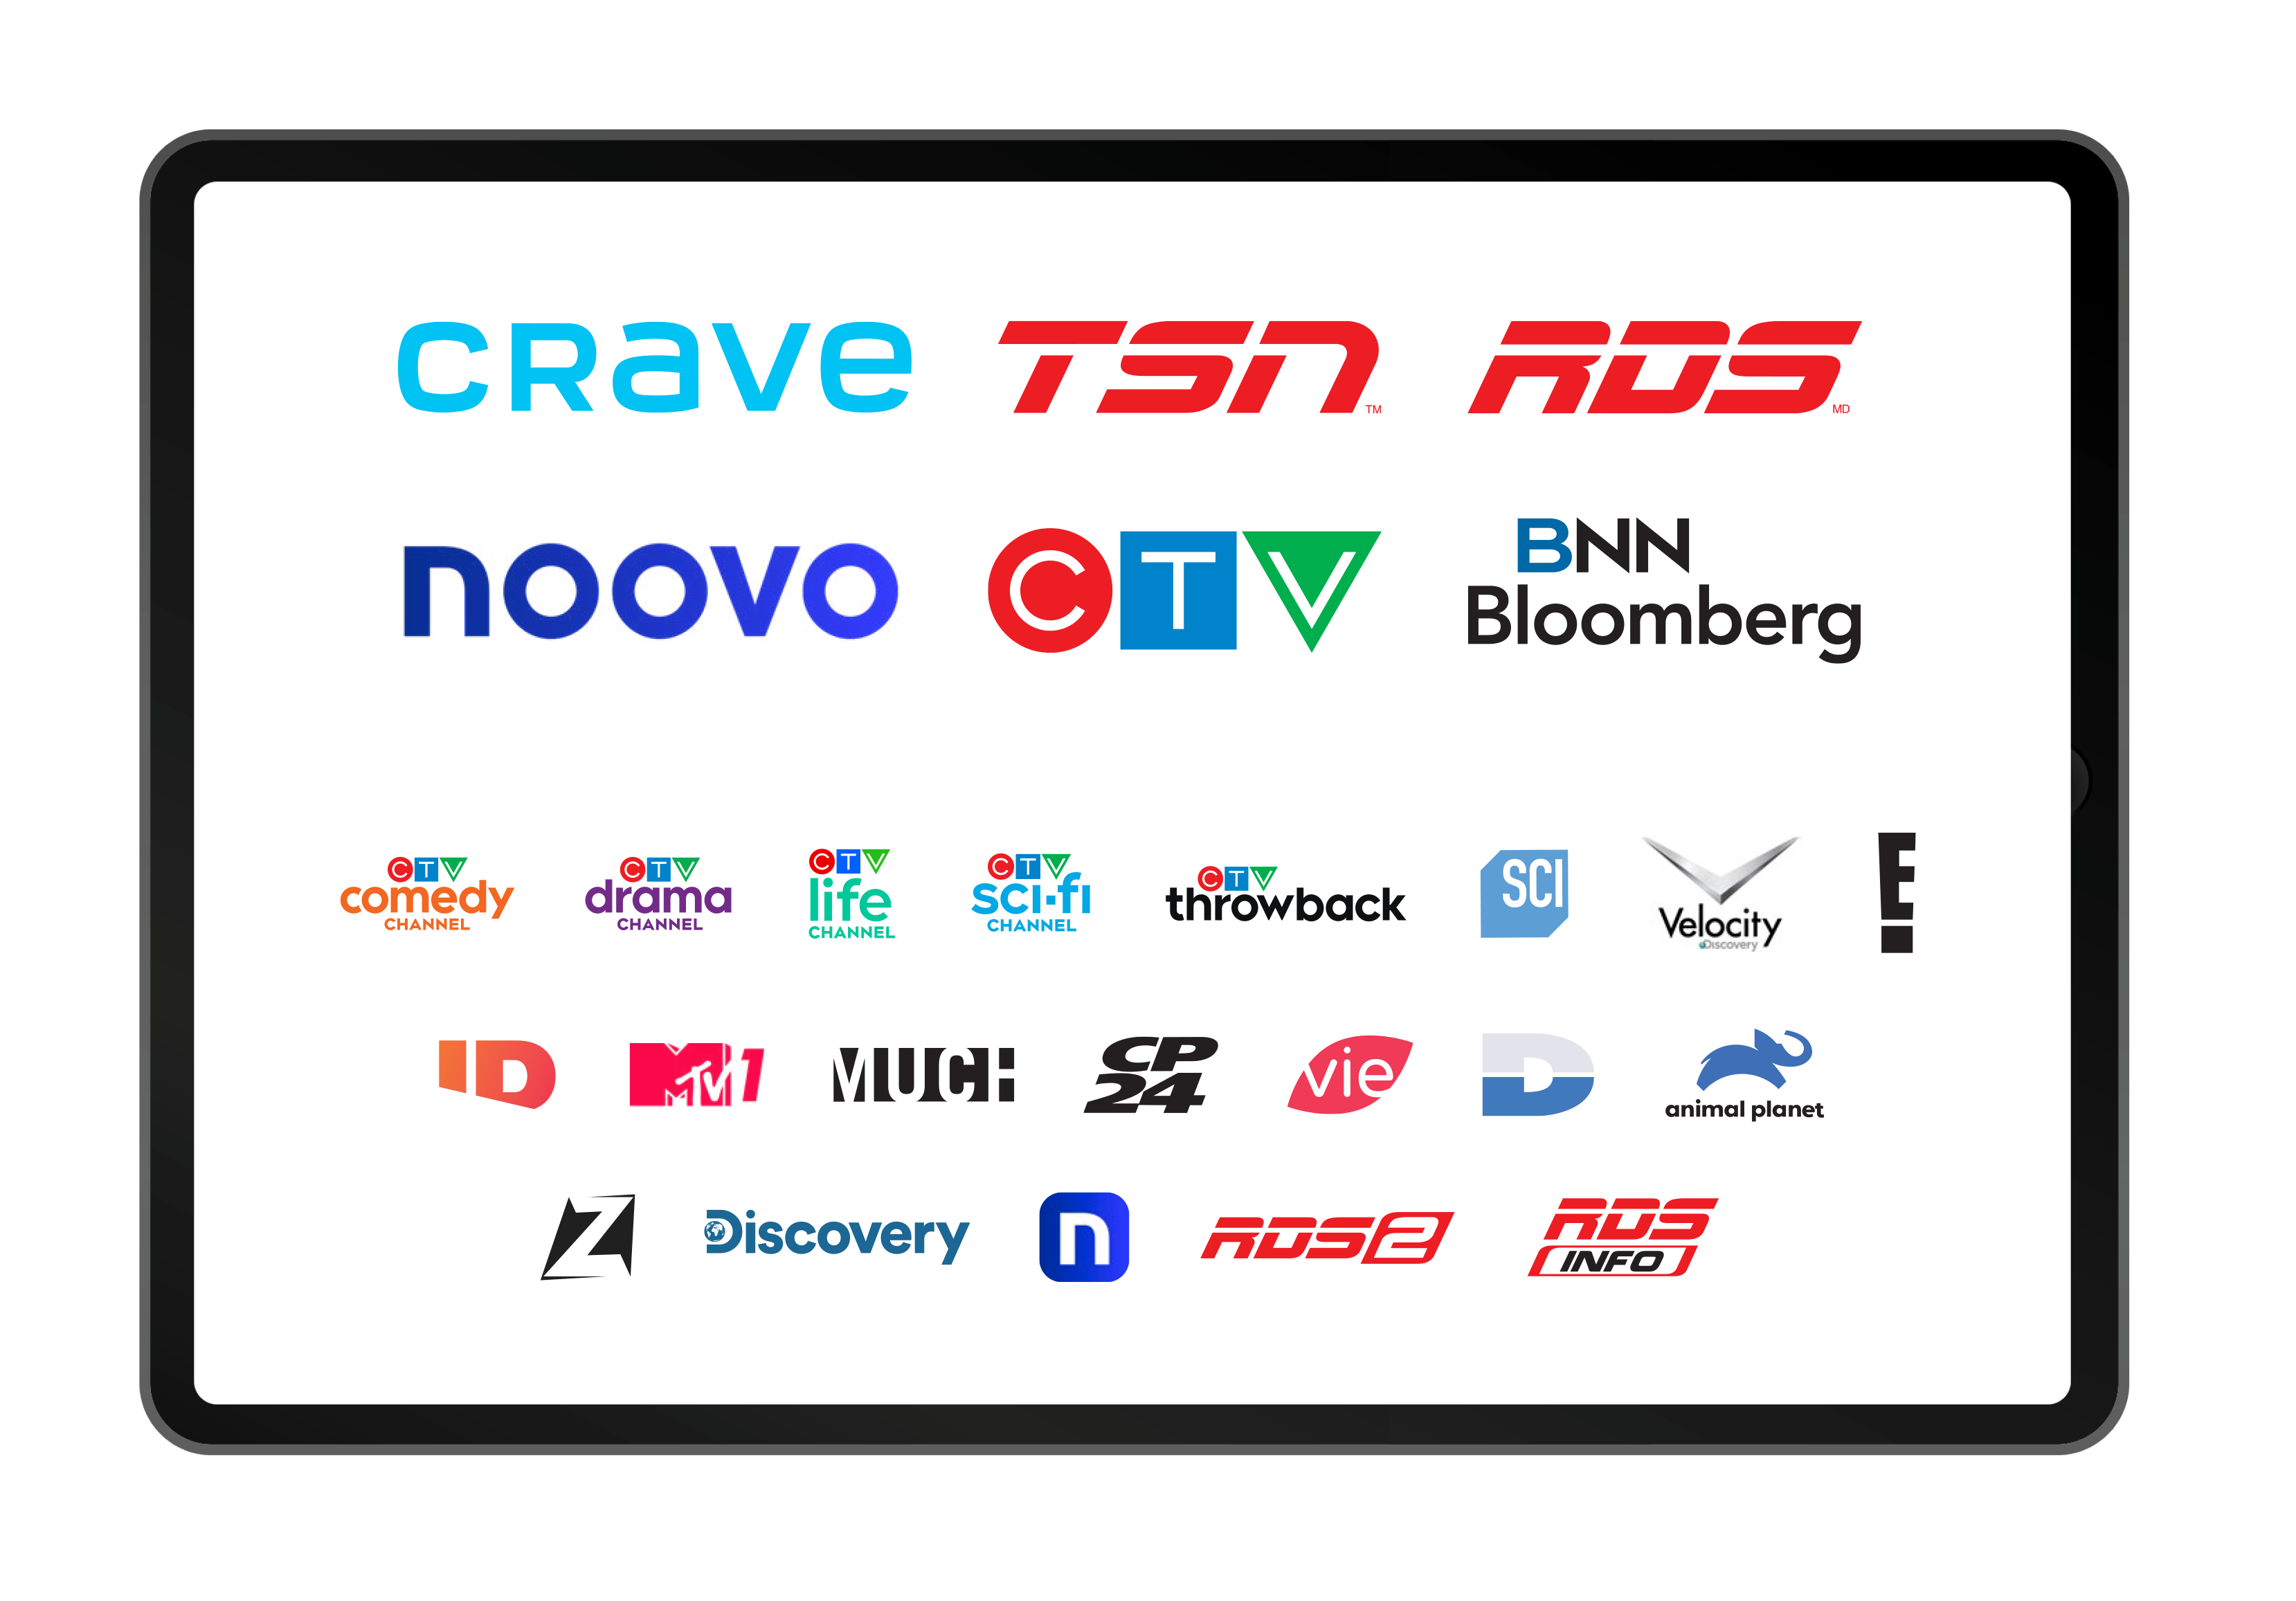 Image representing Bell Media’s TV properties